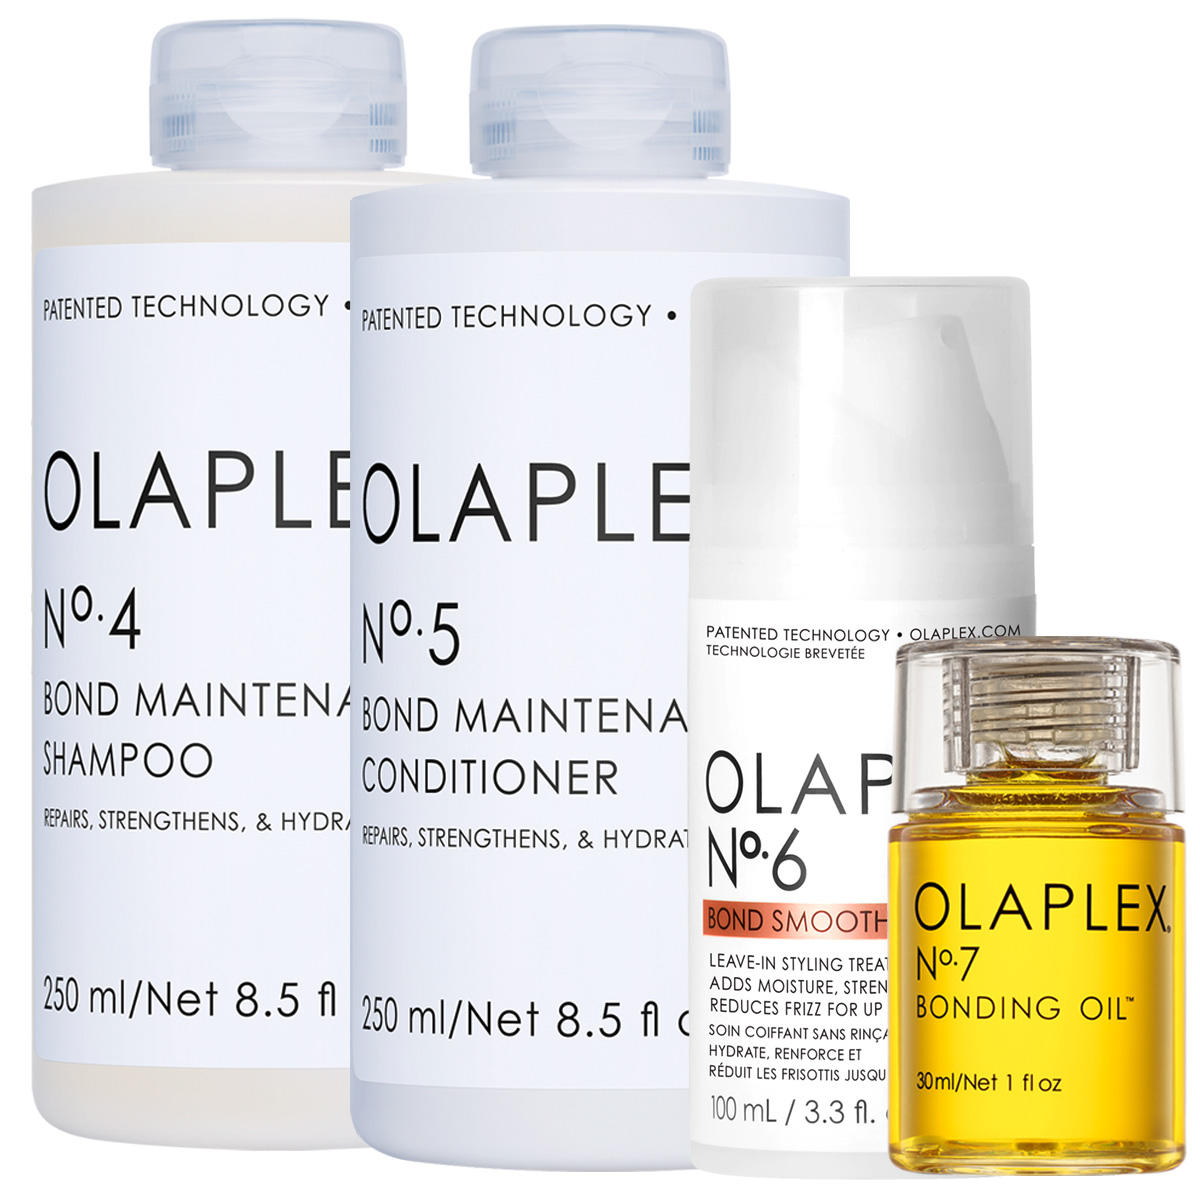 Olaplex Professional Care Set No. 4 + No. 5 + No. 6 + No. 7  - 1